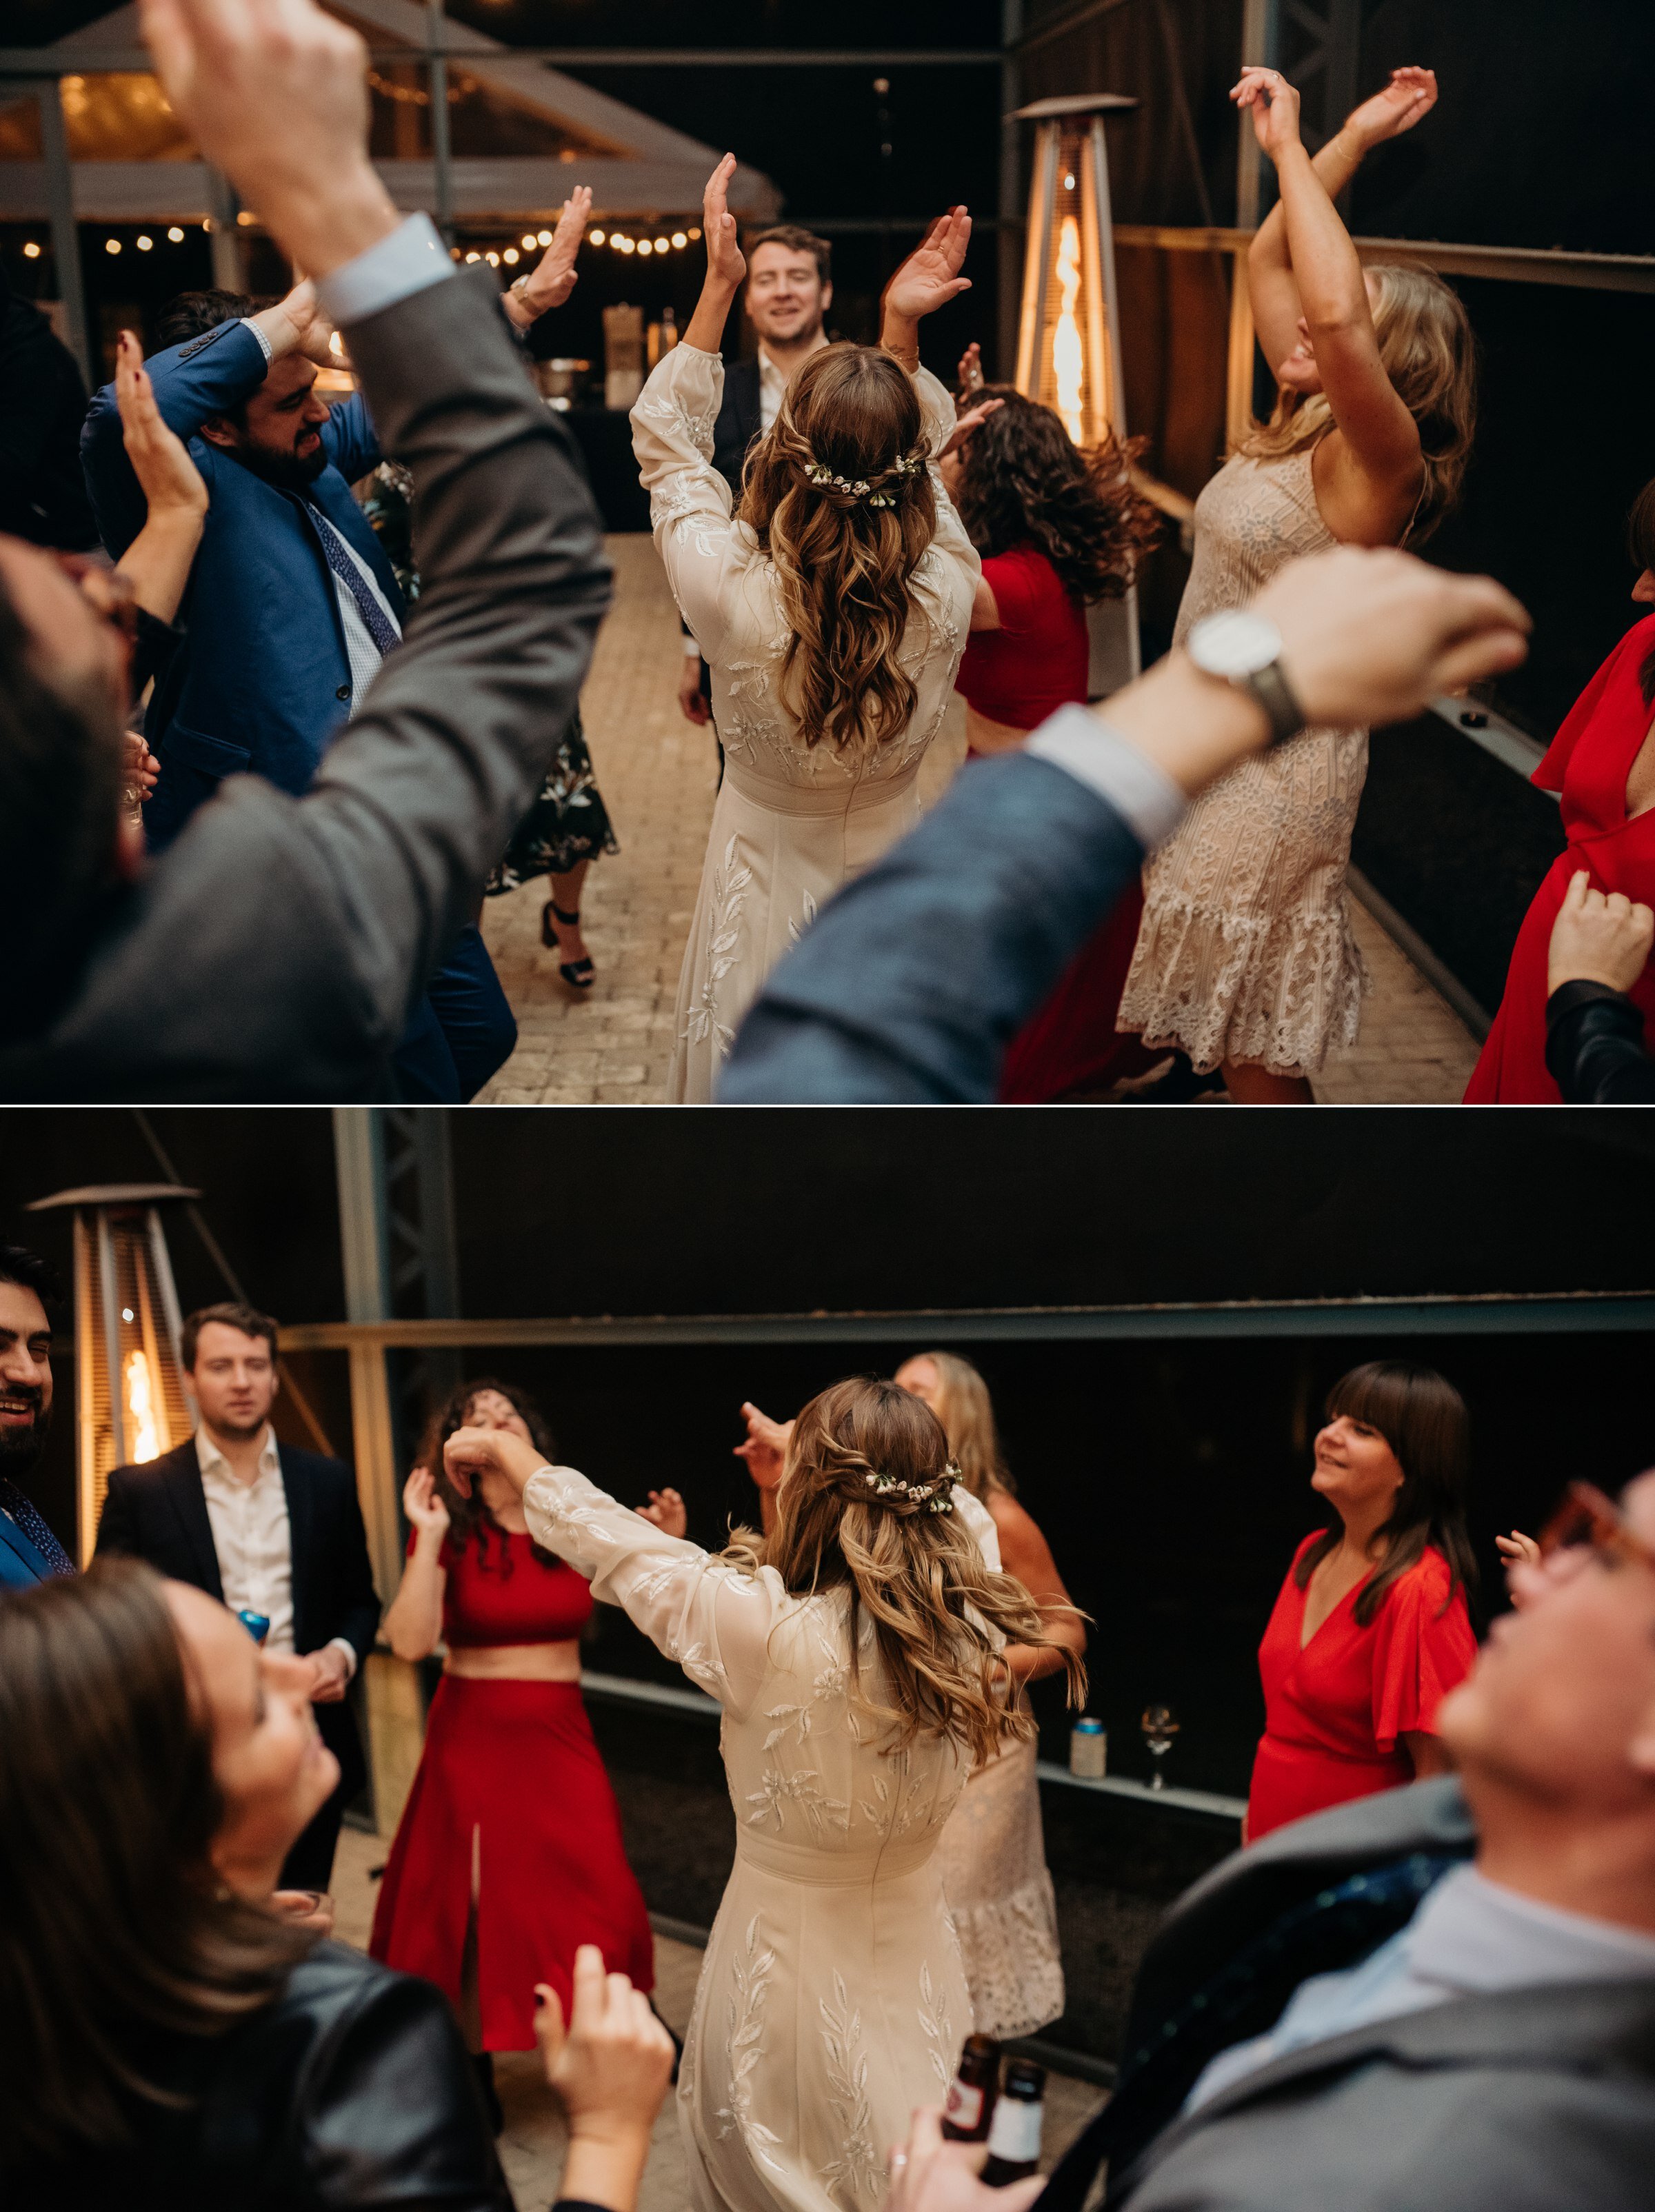  bride dancing with wedding guests plant at kyle wedding venue austin texas 